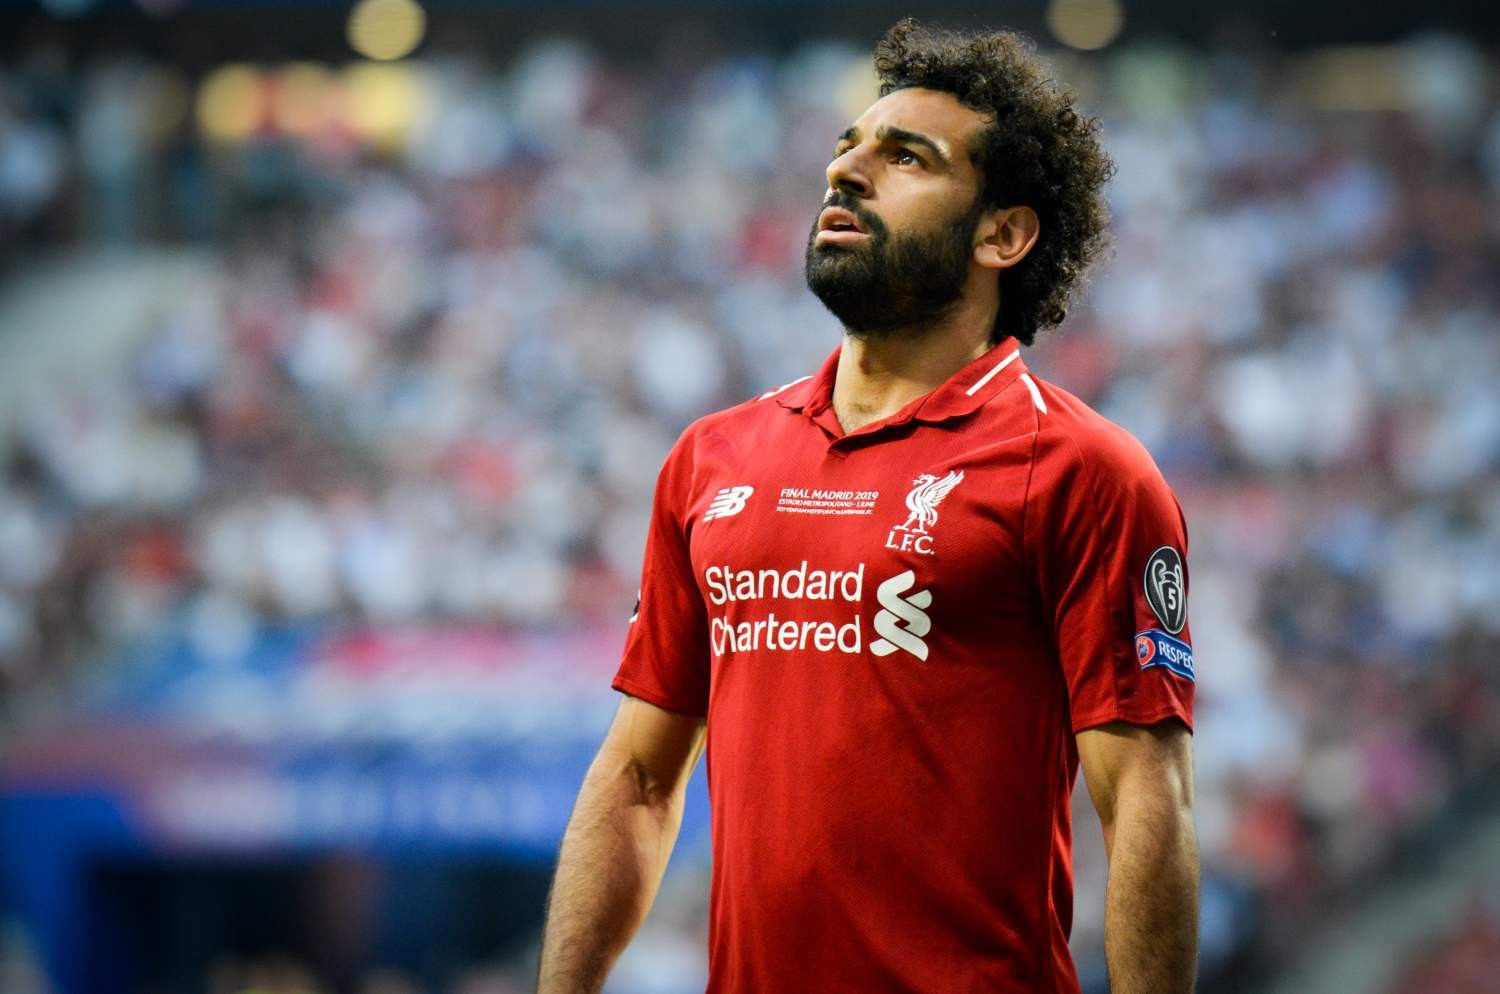 Mohamed Salah myśli o odejściu z Liverpoolu. To może być preferowany kierunek